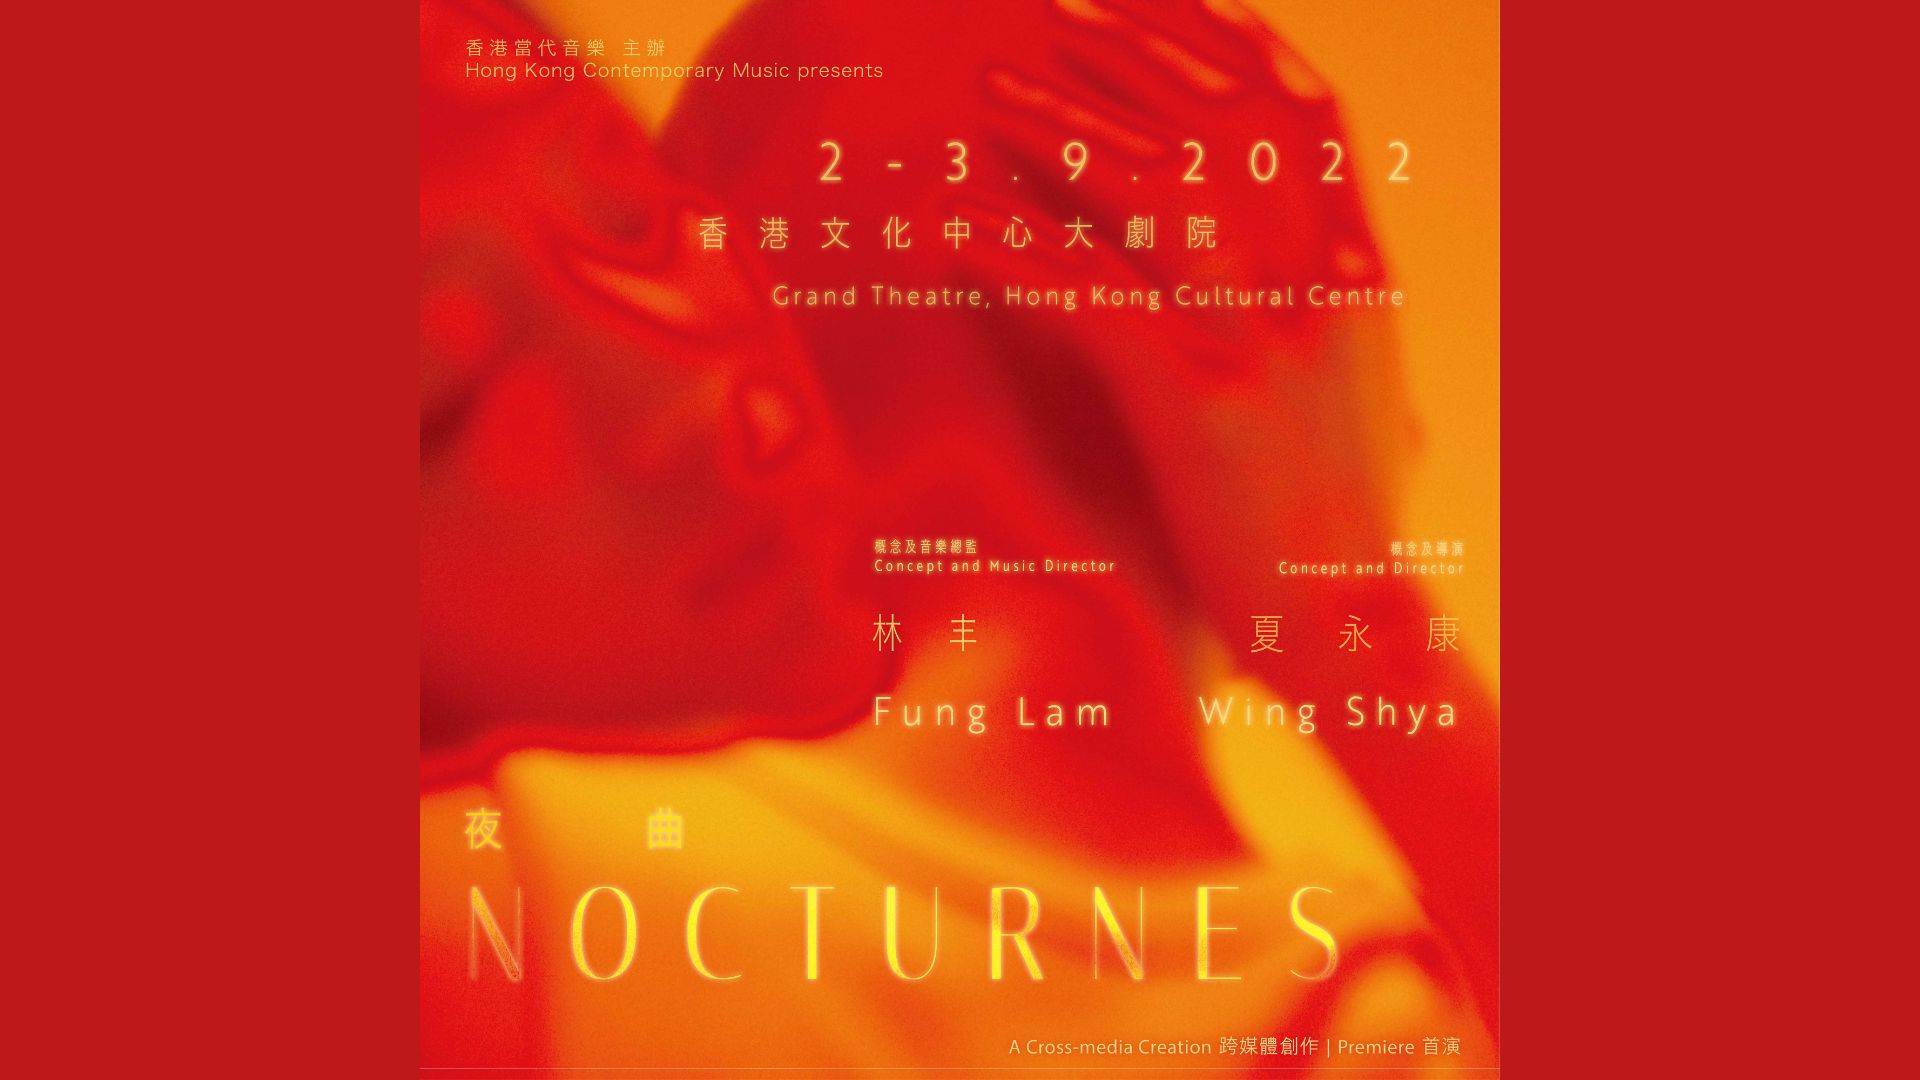 林丰與夏永康首度跨界合作 以「夜曲」為題寫就聲畫交織的無字情書